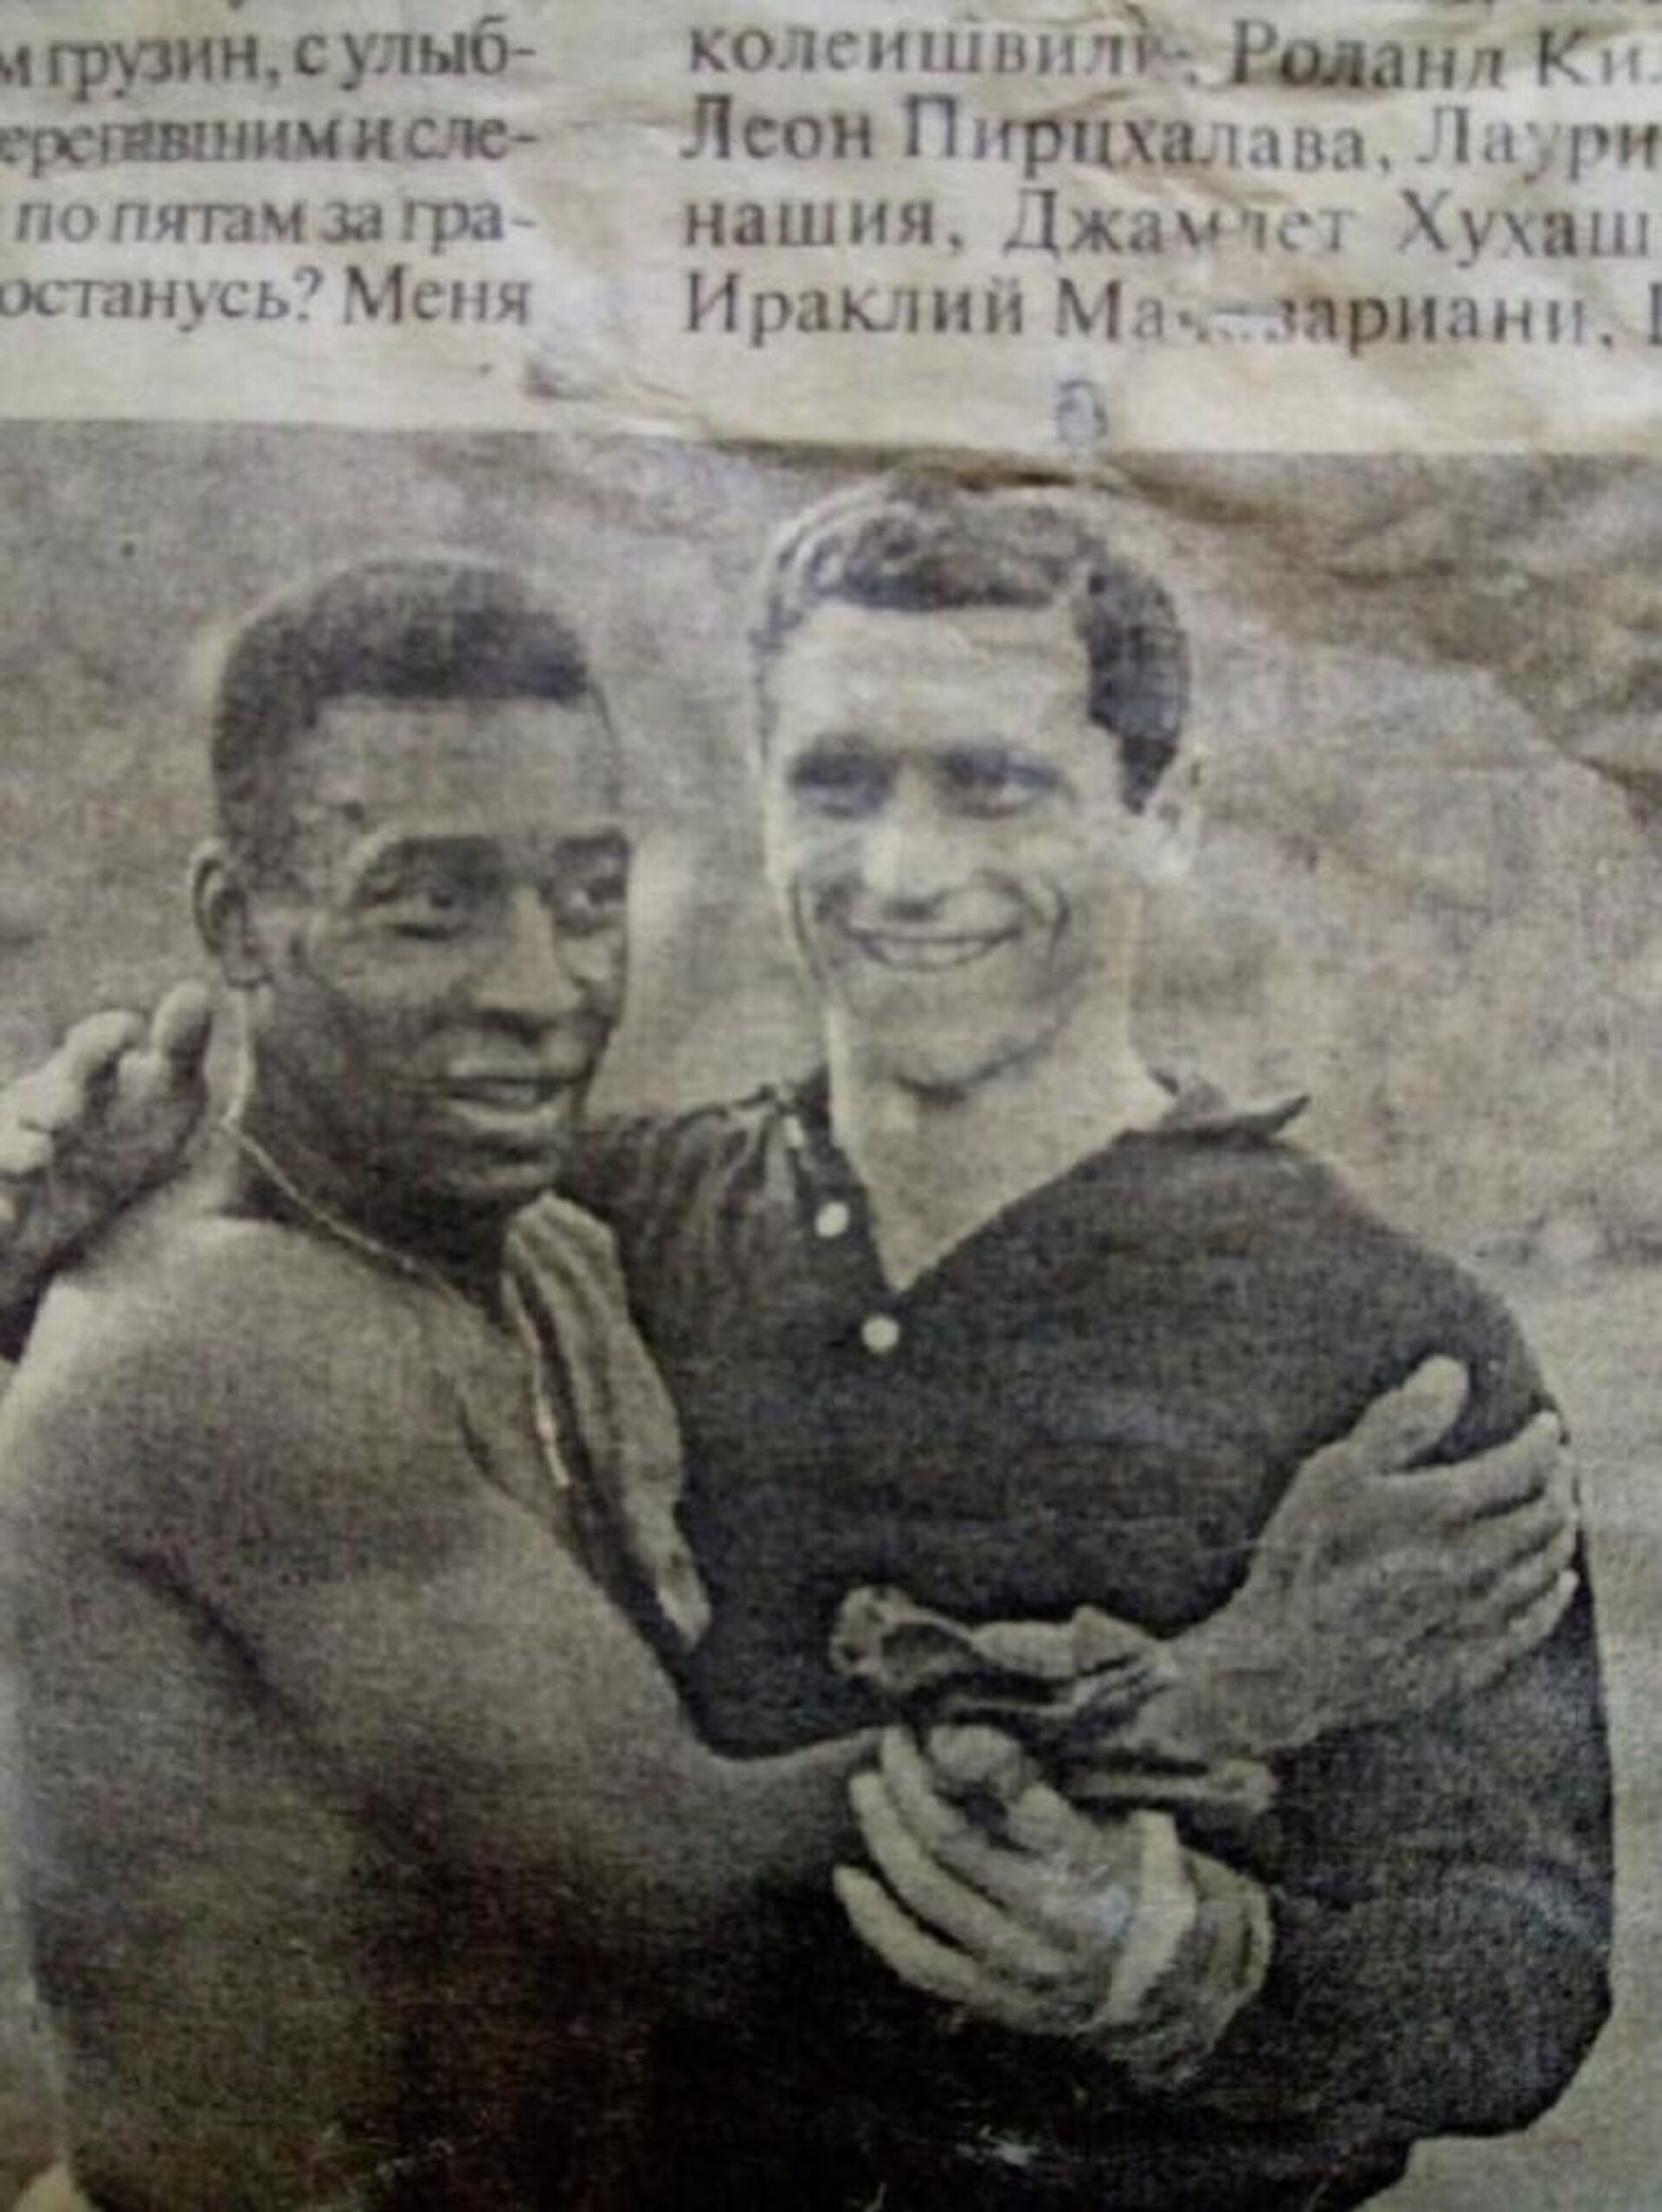 პელესთან ერთად - ფოტო ძველი საგაზეთო სტატიიდან - Sputnik Грузия, 1920, 26.08.2021